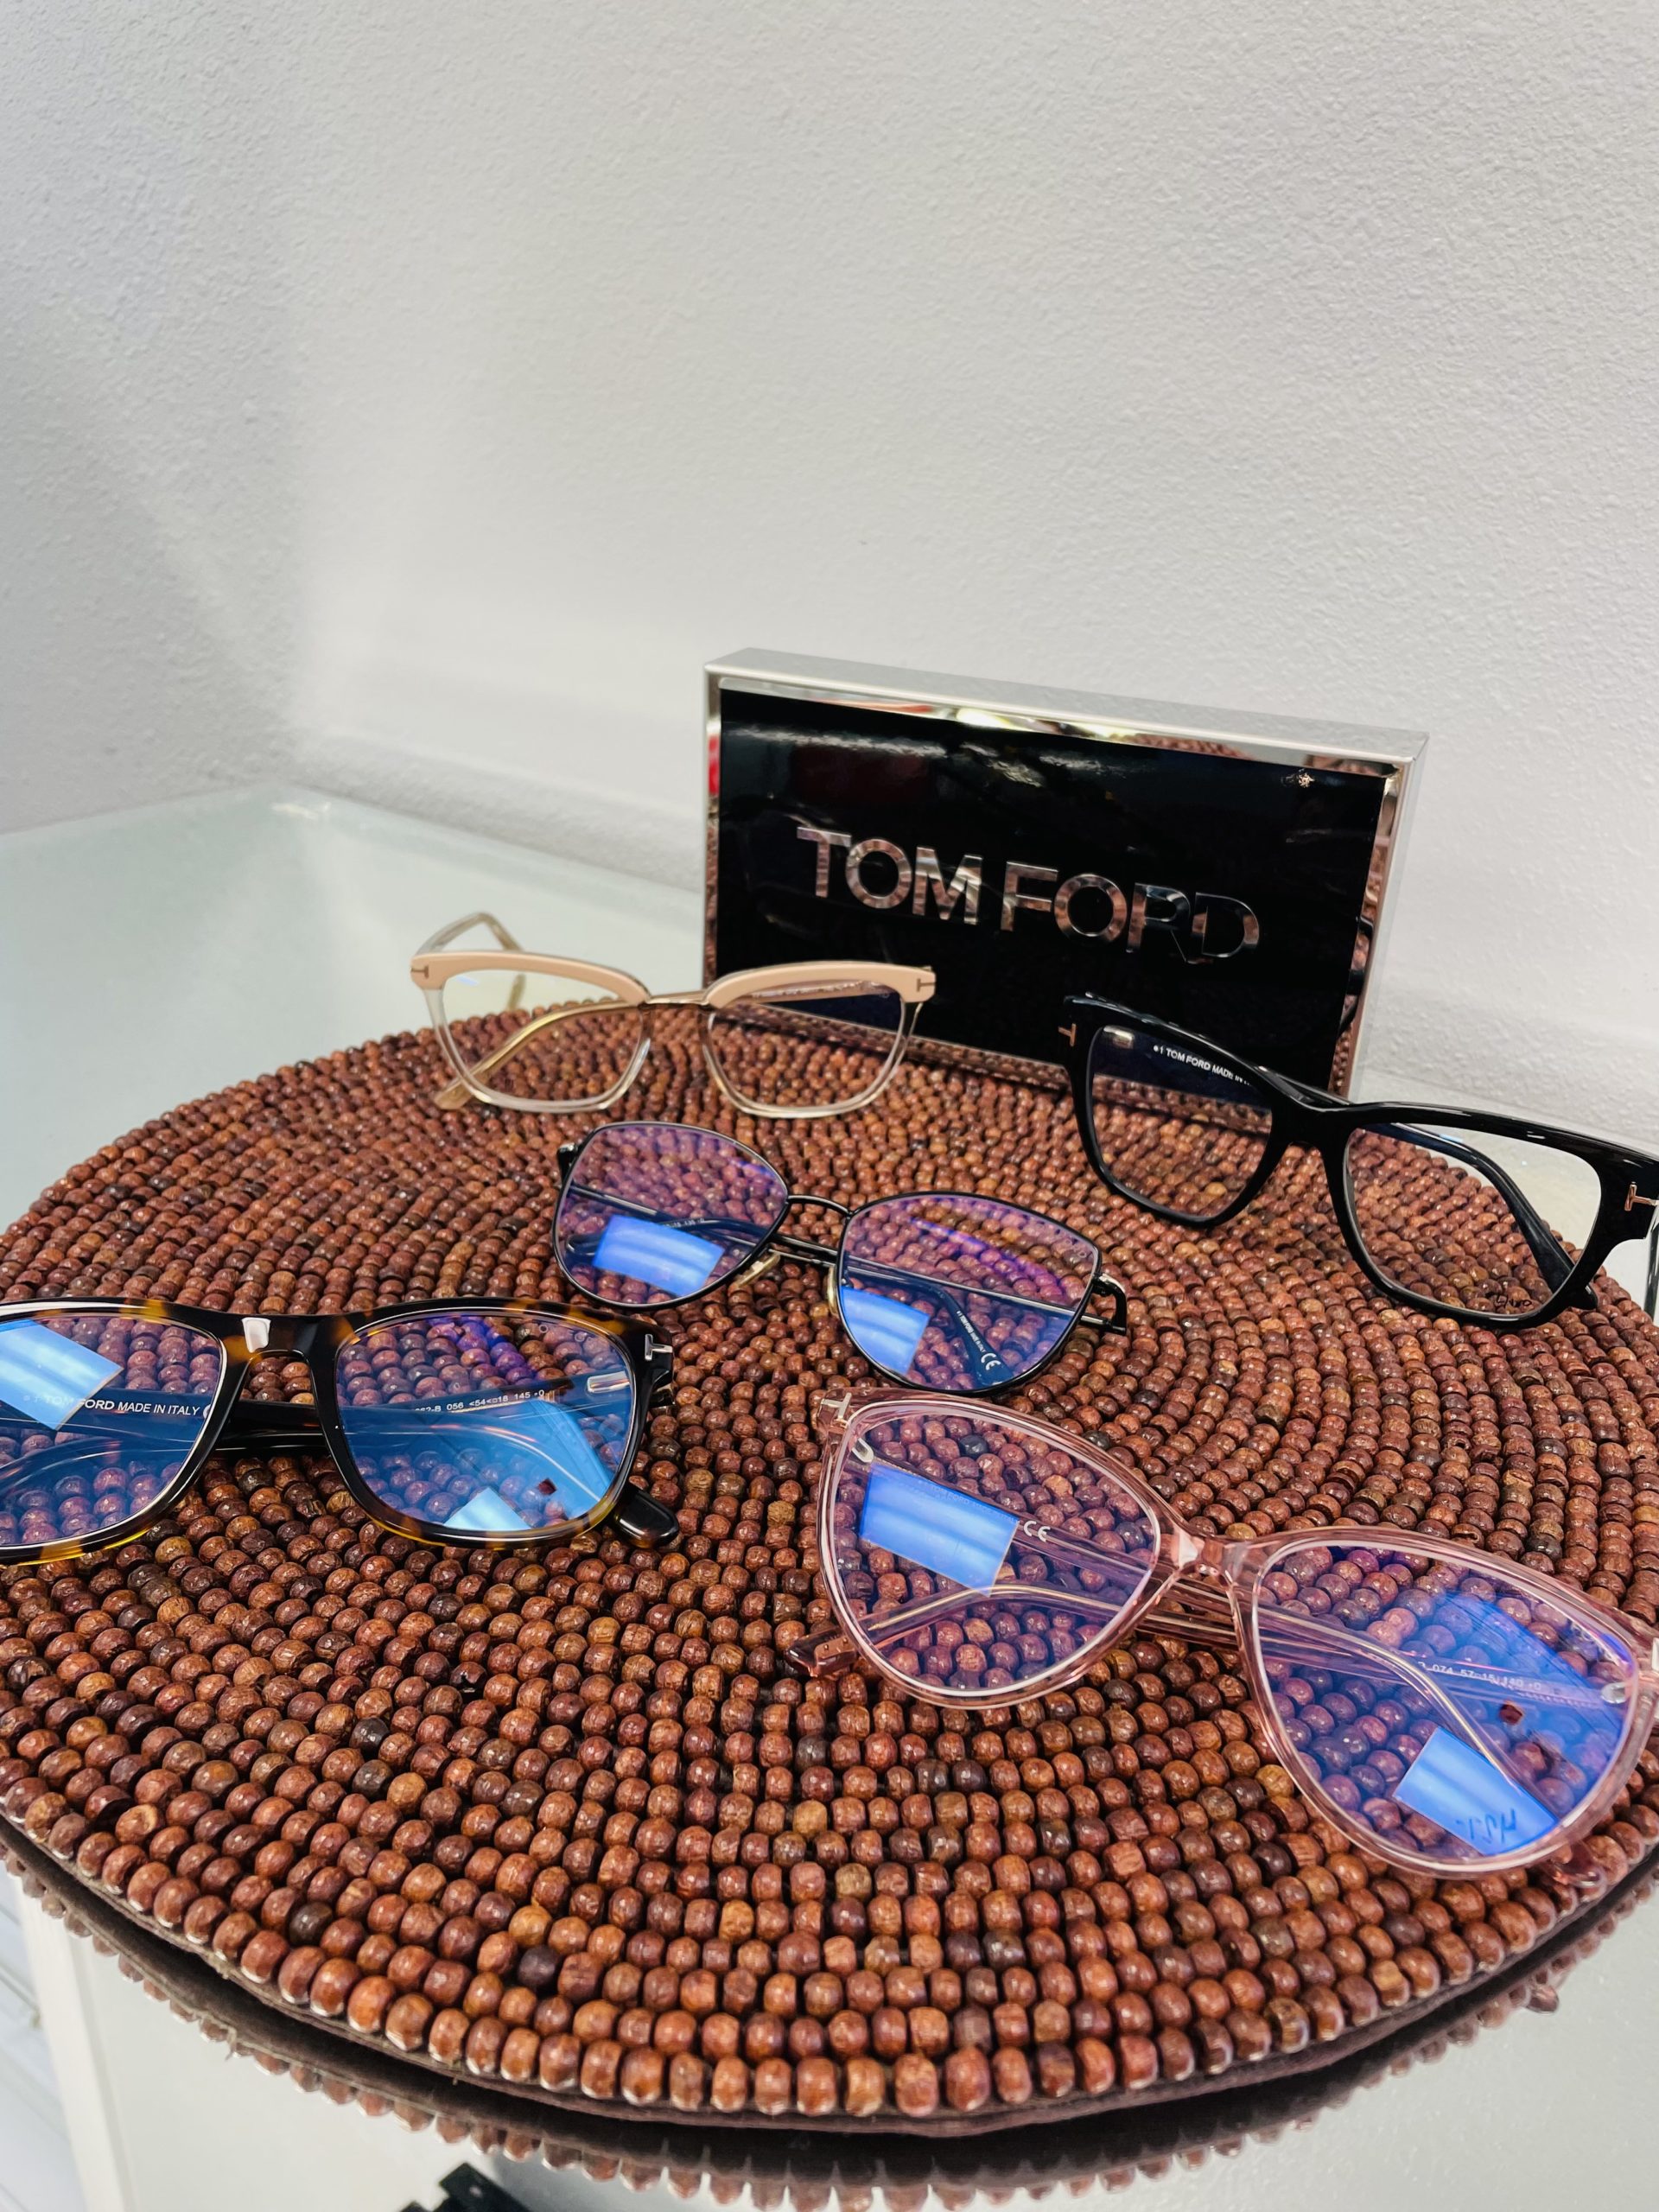 Tom Ford Designer Eyewear